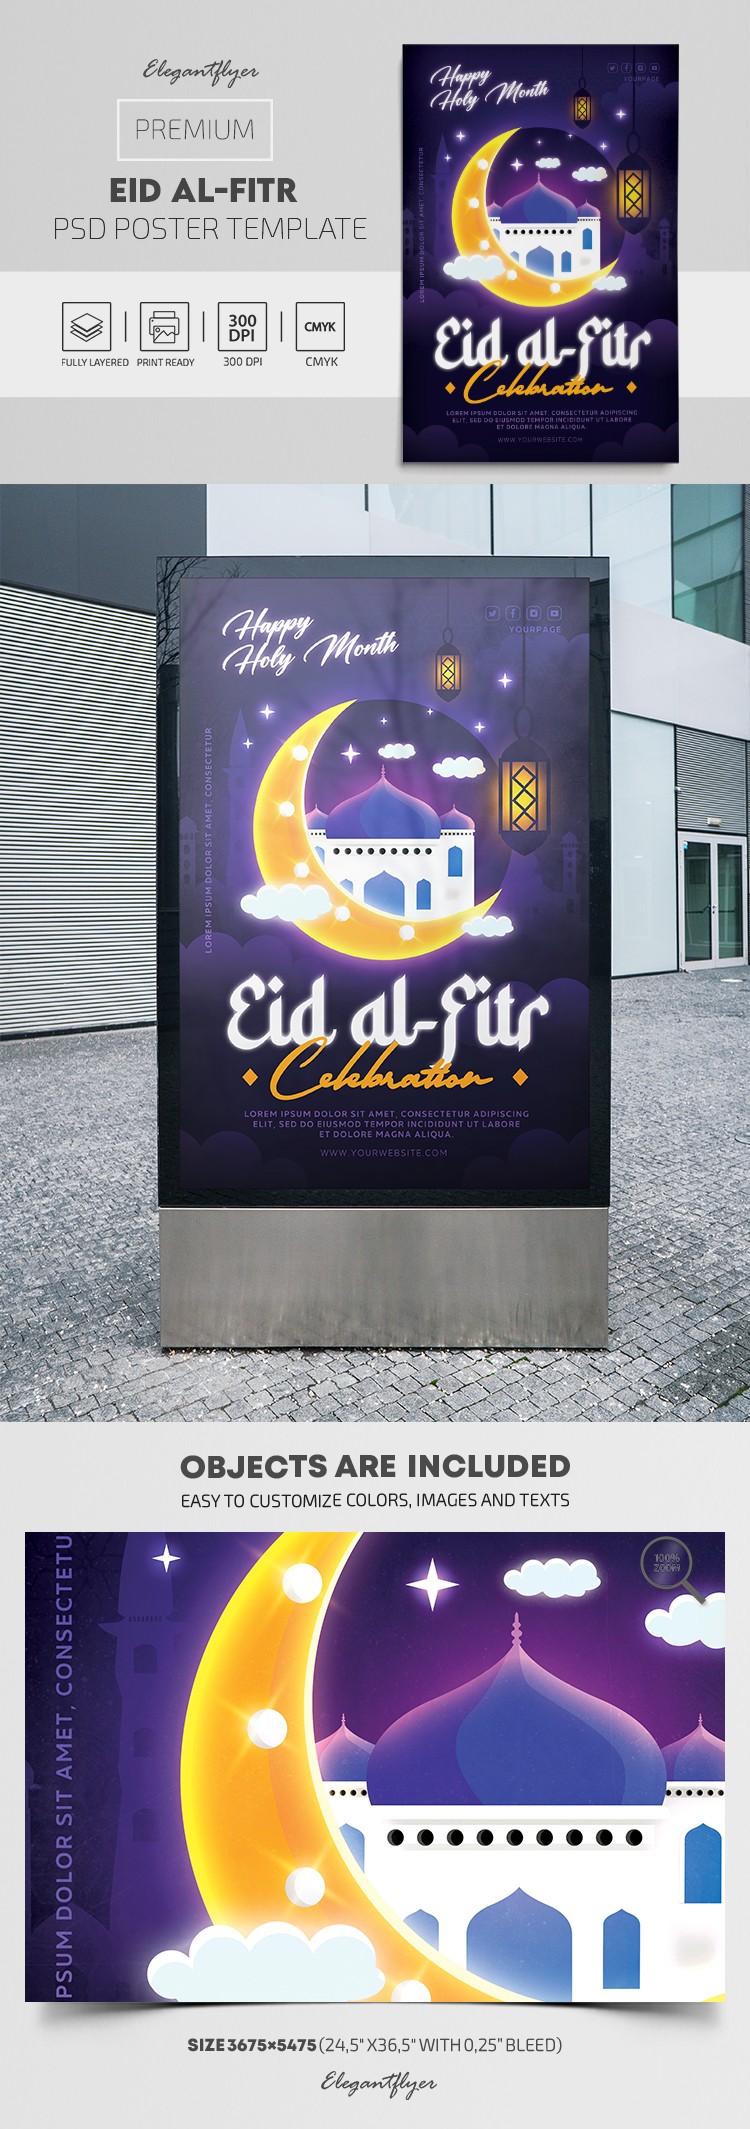 Affiche de l'Eid Al-Fitr by ElegantFlyer